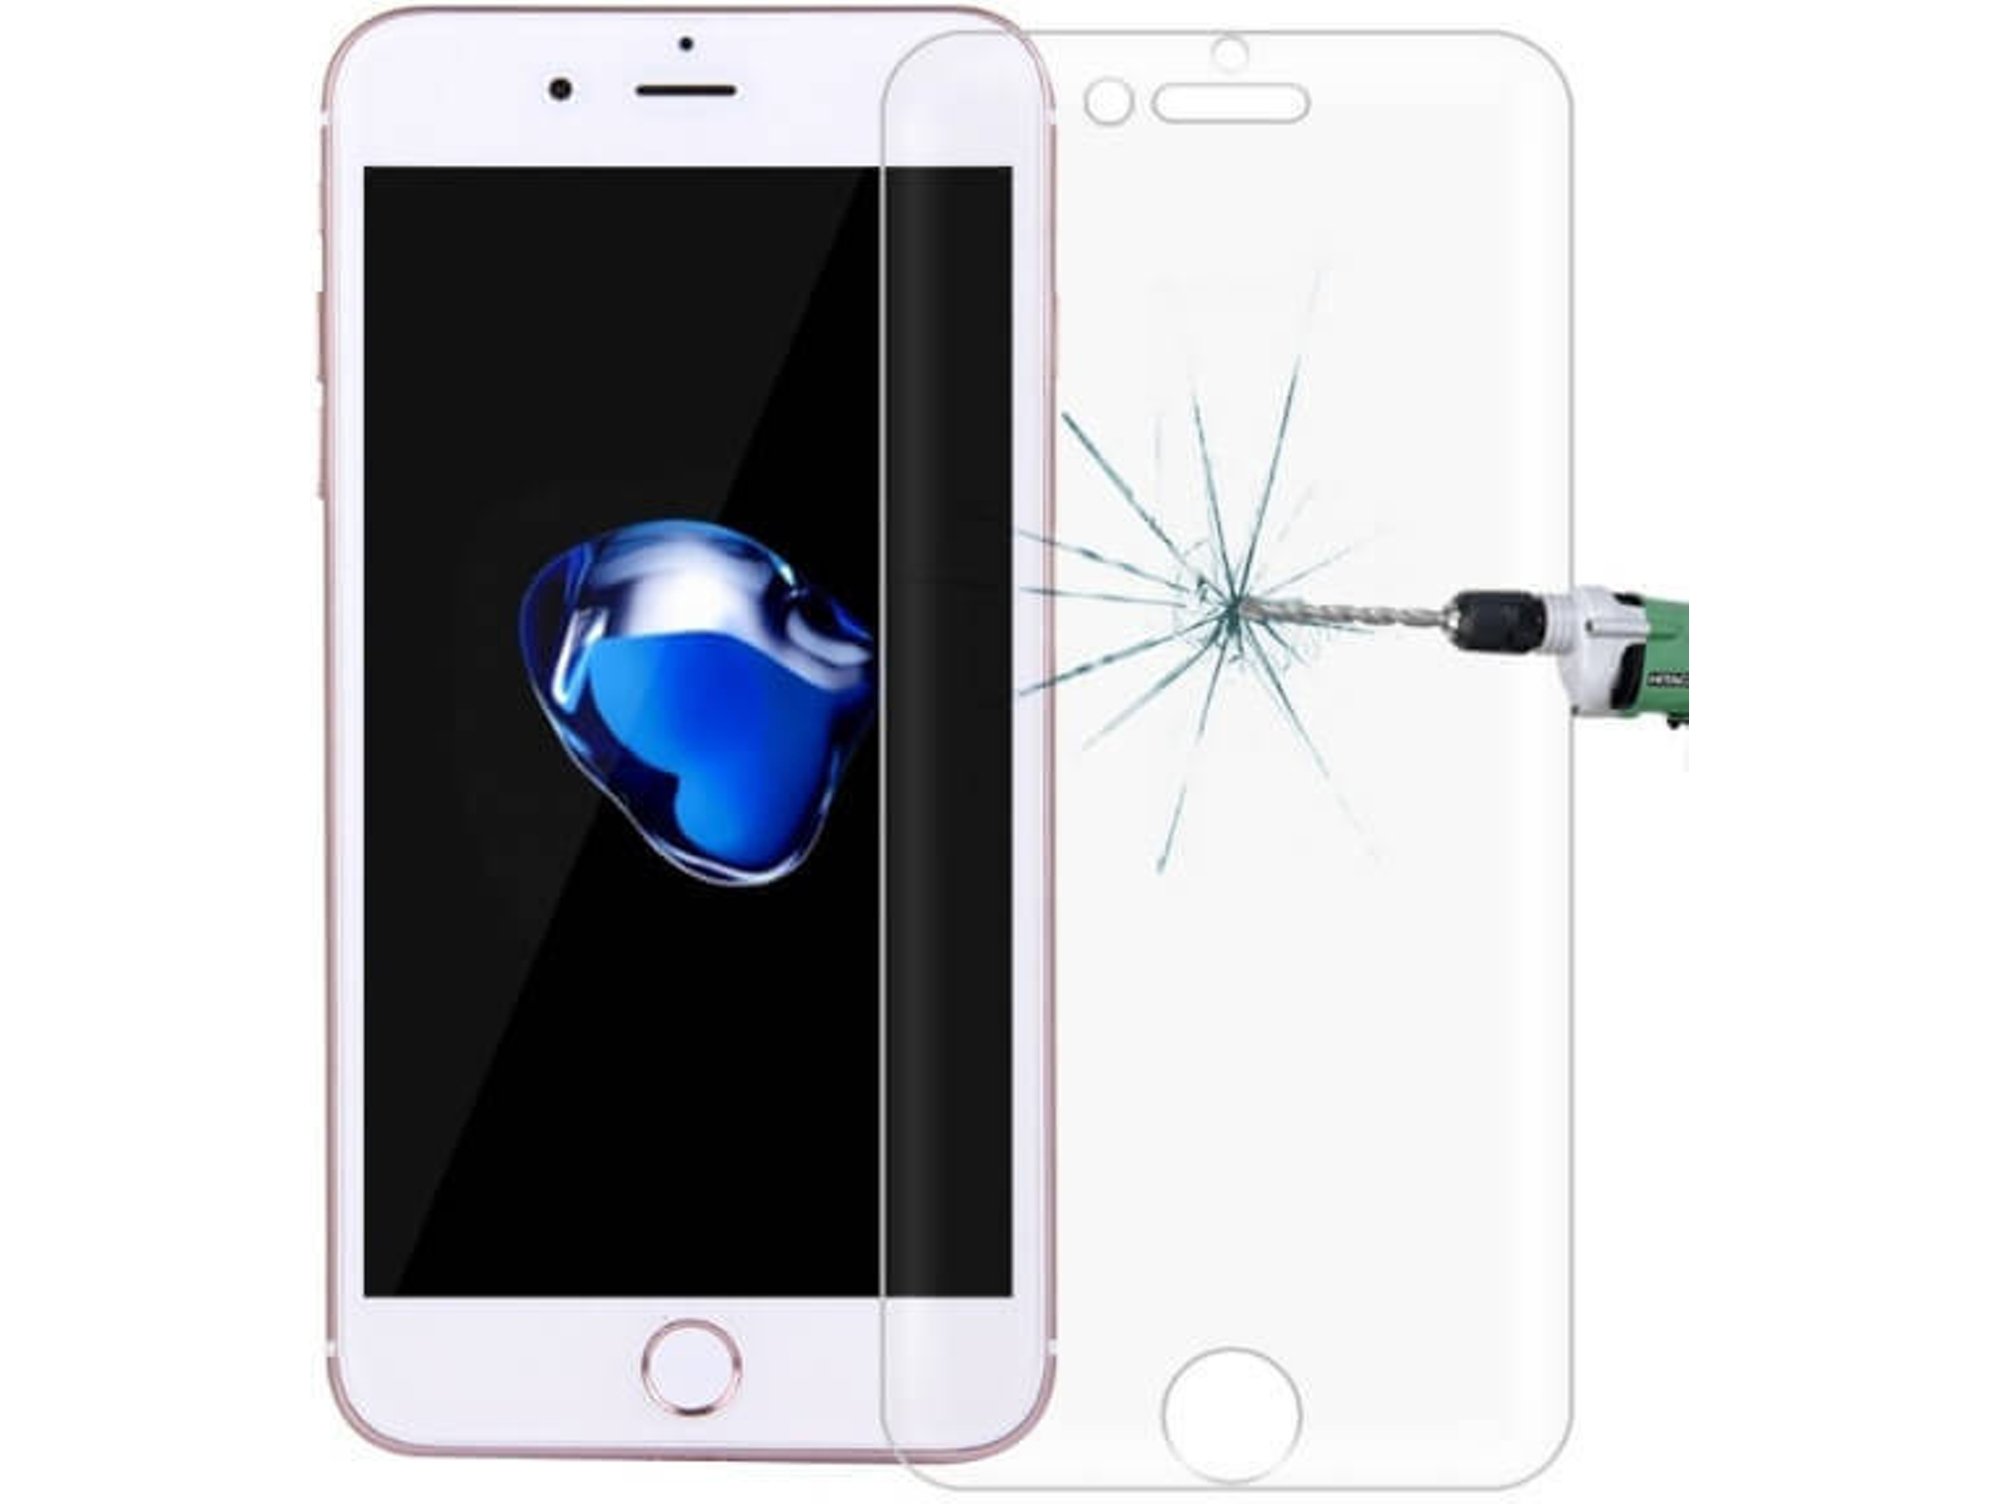 Protector de Cristal Templado Apple iPhone 7, 8 PPI7C_ES